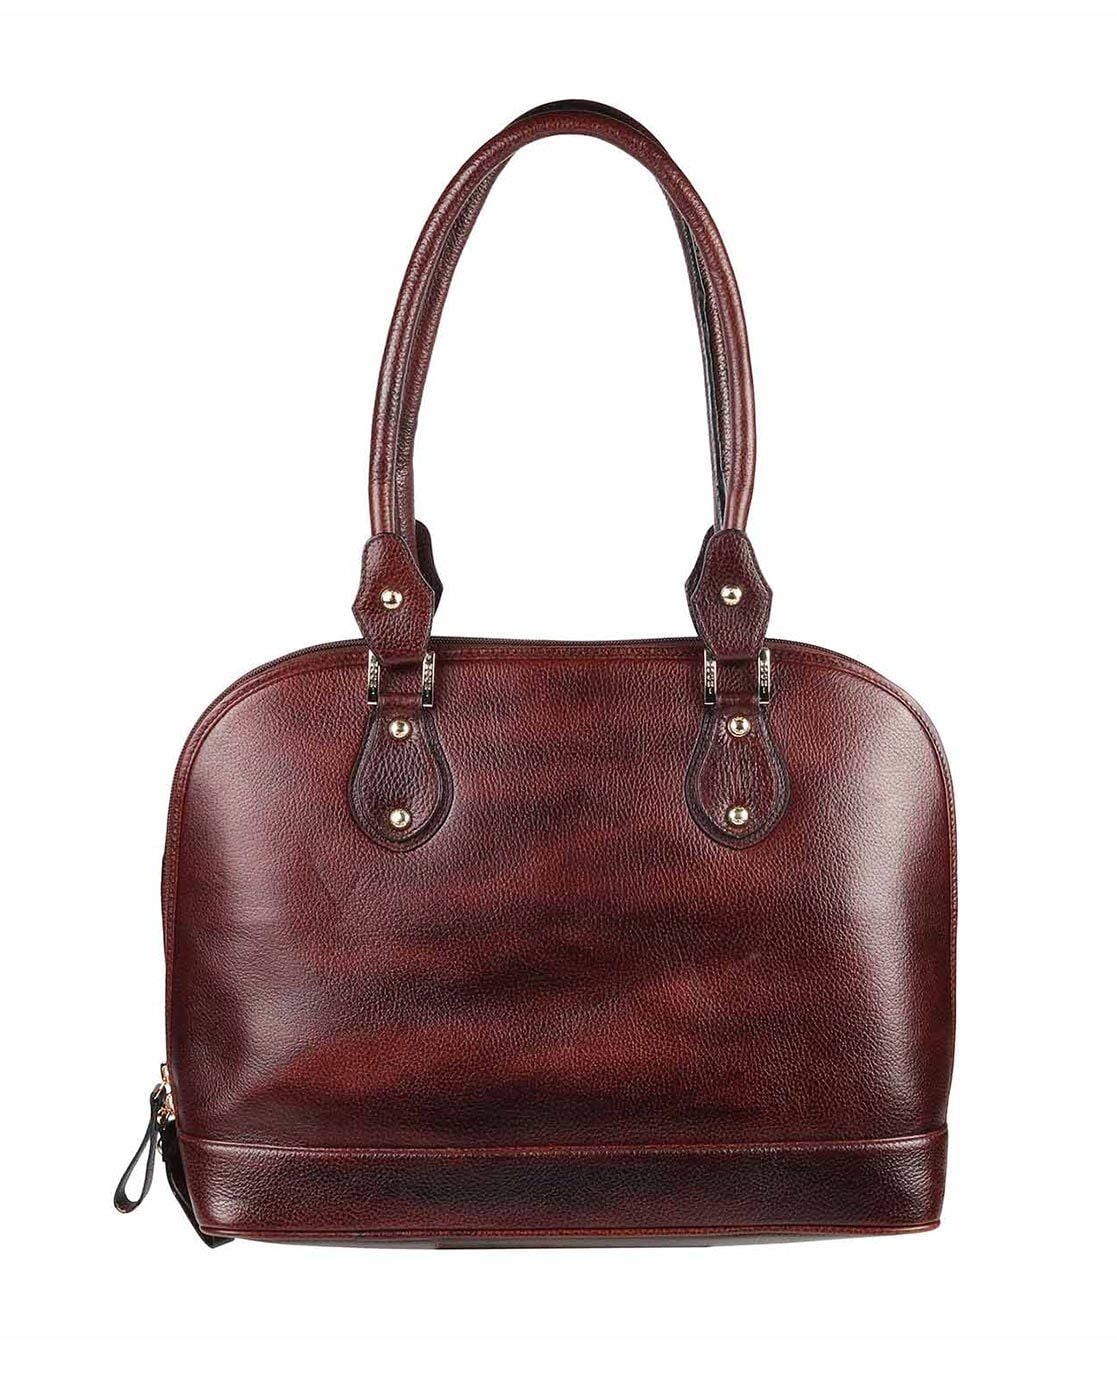 Promotion of fashionable, Stylish & Trendy handbag Collection for Cheemo |  Trendy handbags, Handbag, Creative